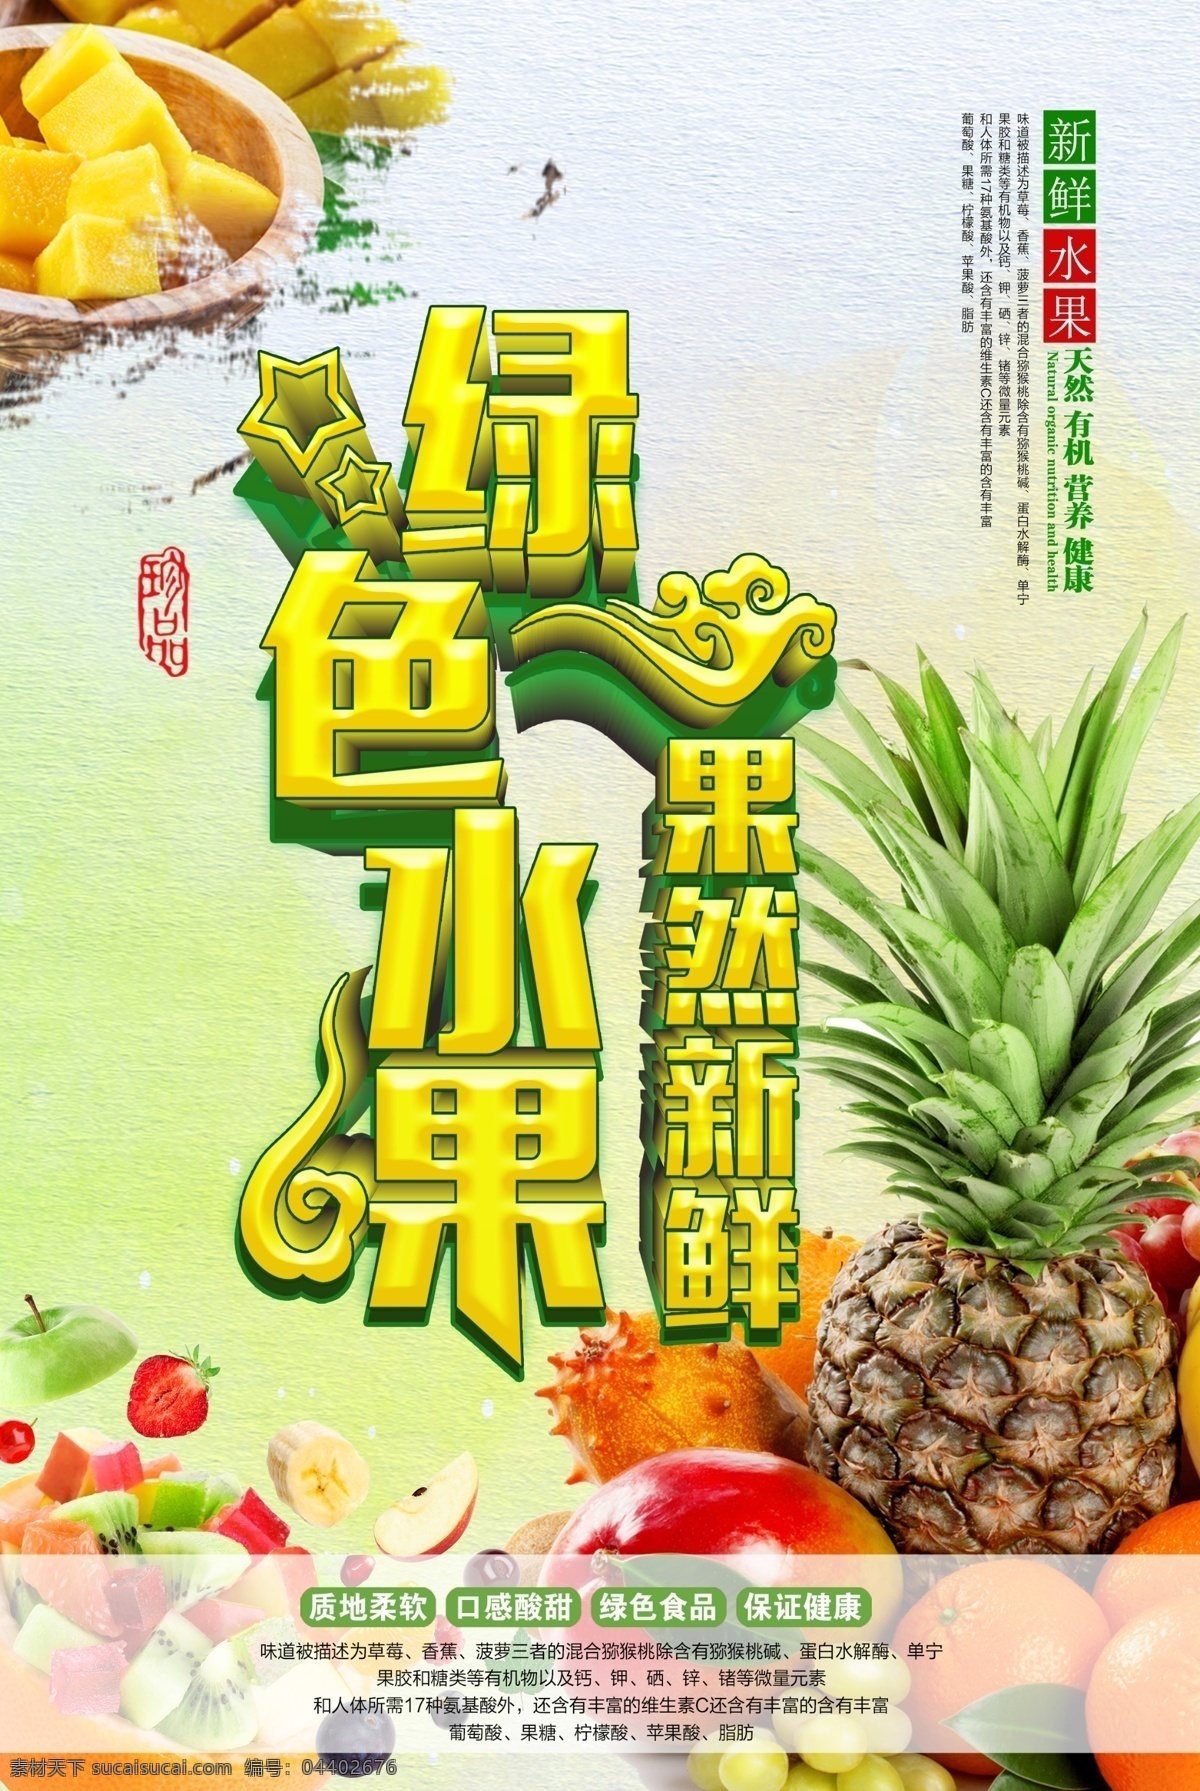 绿色 健康 水果 创意 新鲜水果 水果海报 水果店 水果超市 水果展板 水果广告 水果促销 水果拼盘 蔬菜水果 水果背景 水果年历